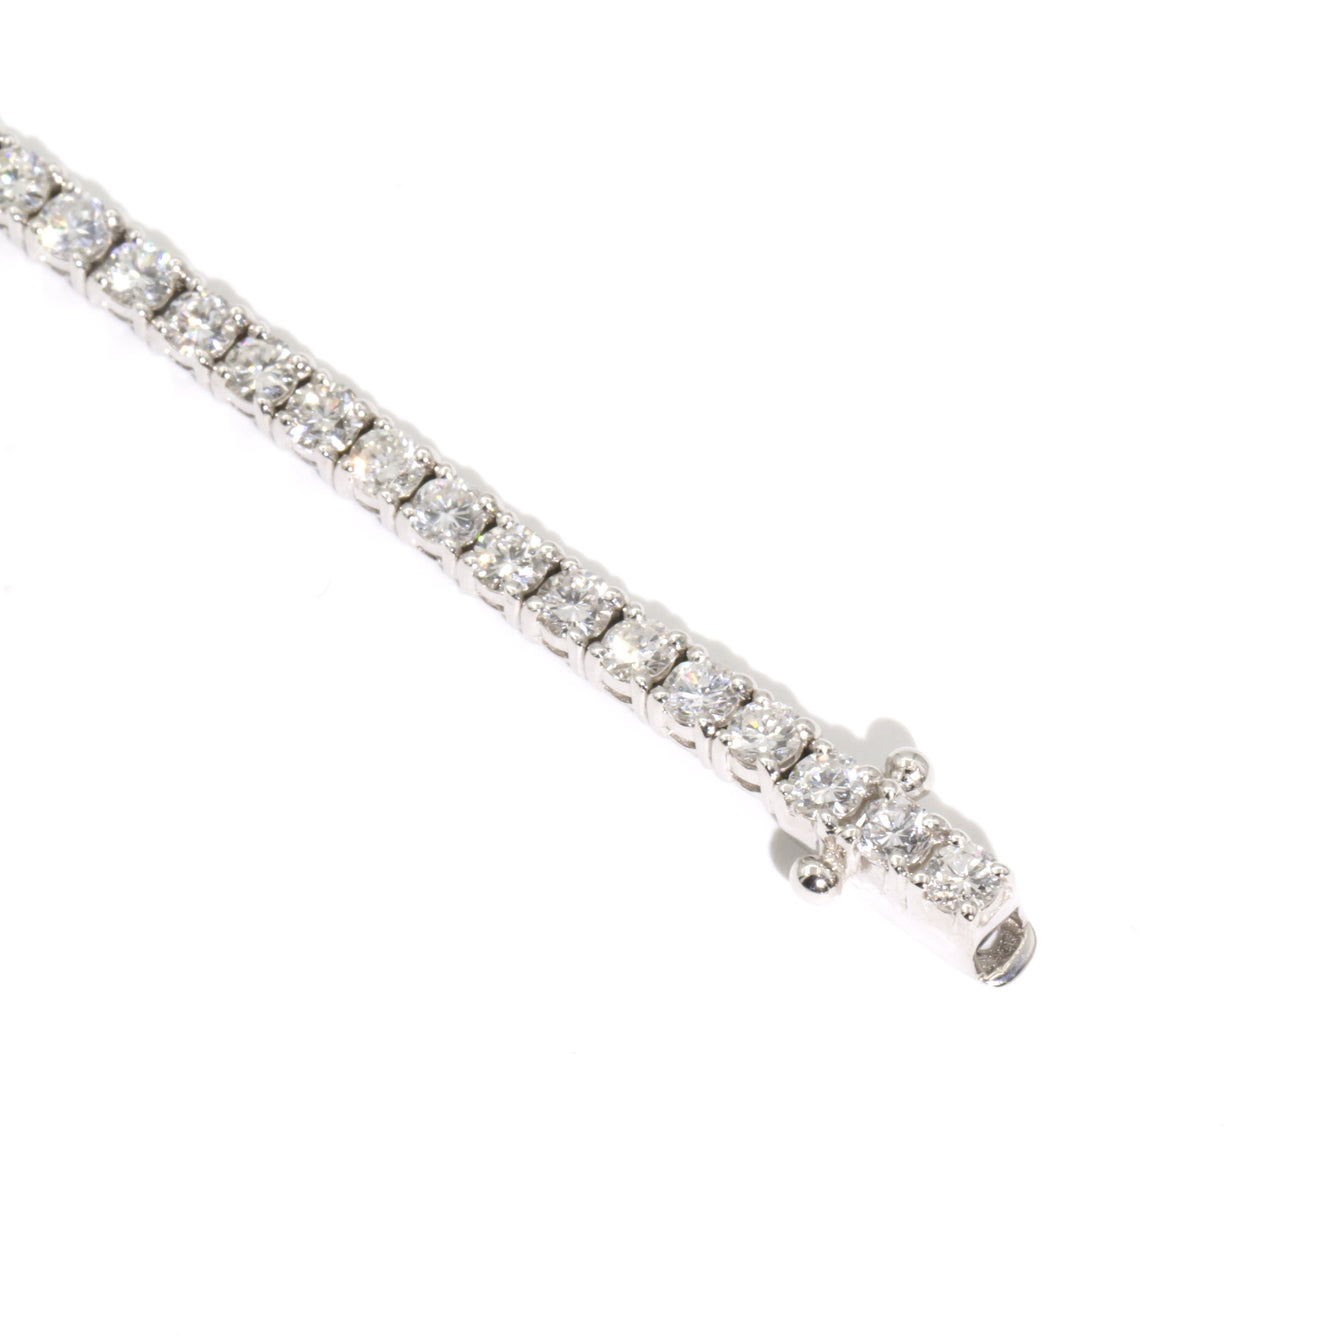 Winter 18 Carat White Gold Diamond Tennis Bracelet Bracelets/Bangles Imperial Jewellery - Auctions, Antique, Vintage & Estate